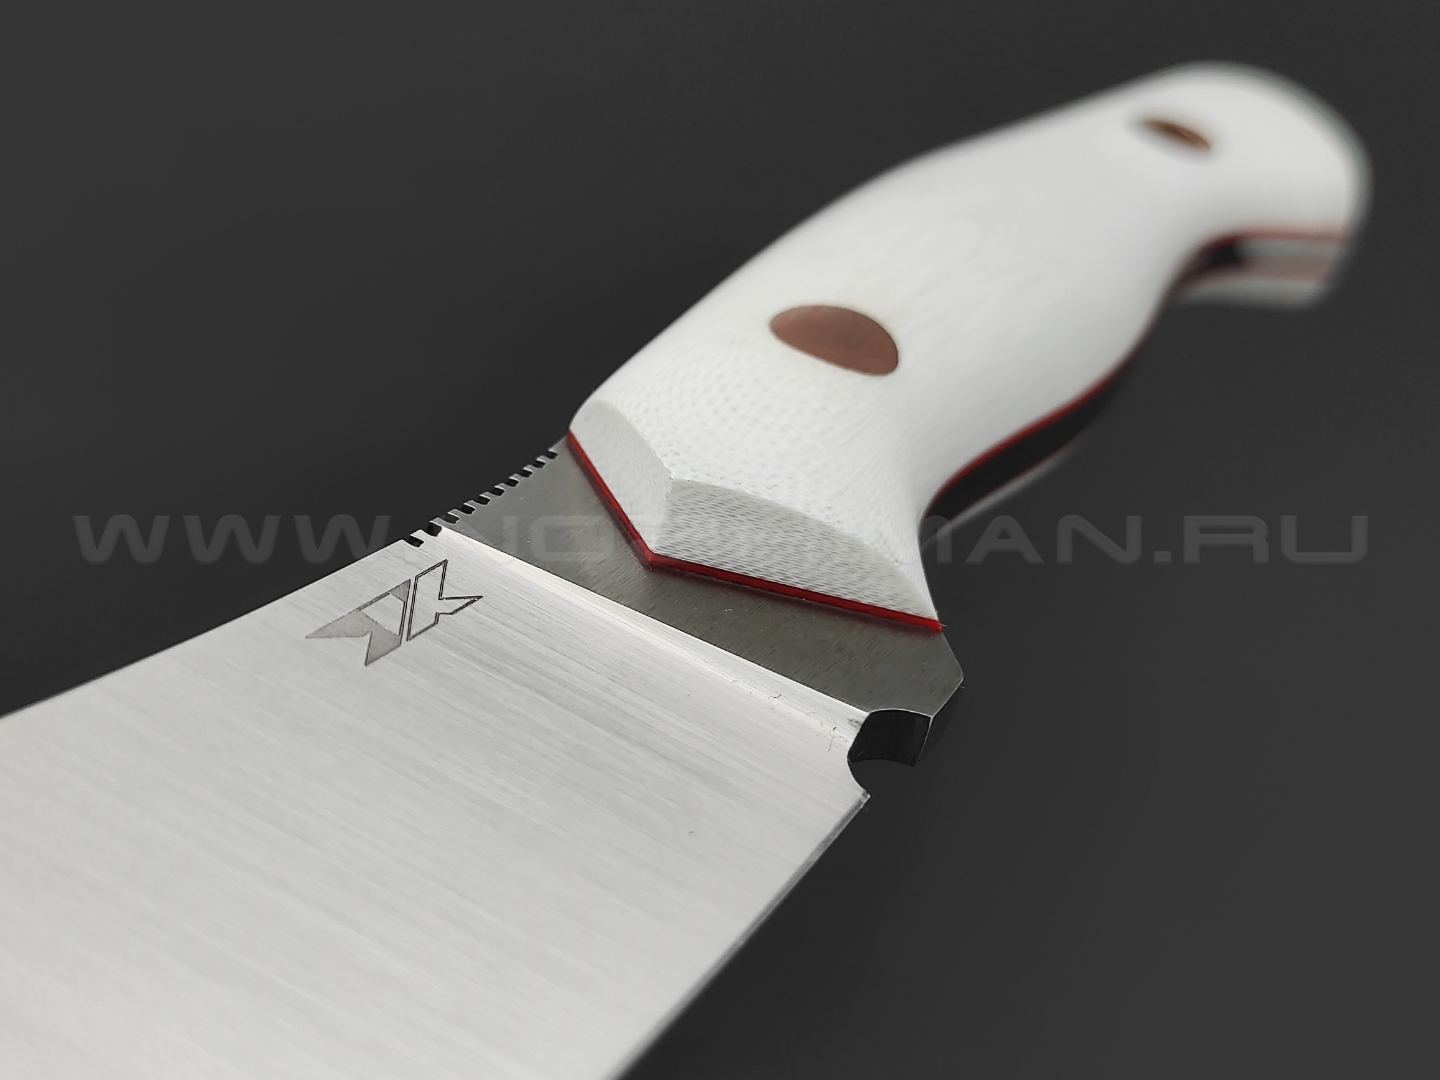 7 ножей нож Нессмук сталь VG-10 satin, рукоять G10 white & red